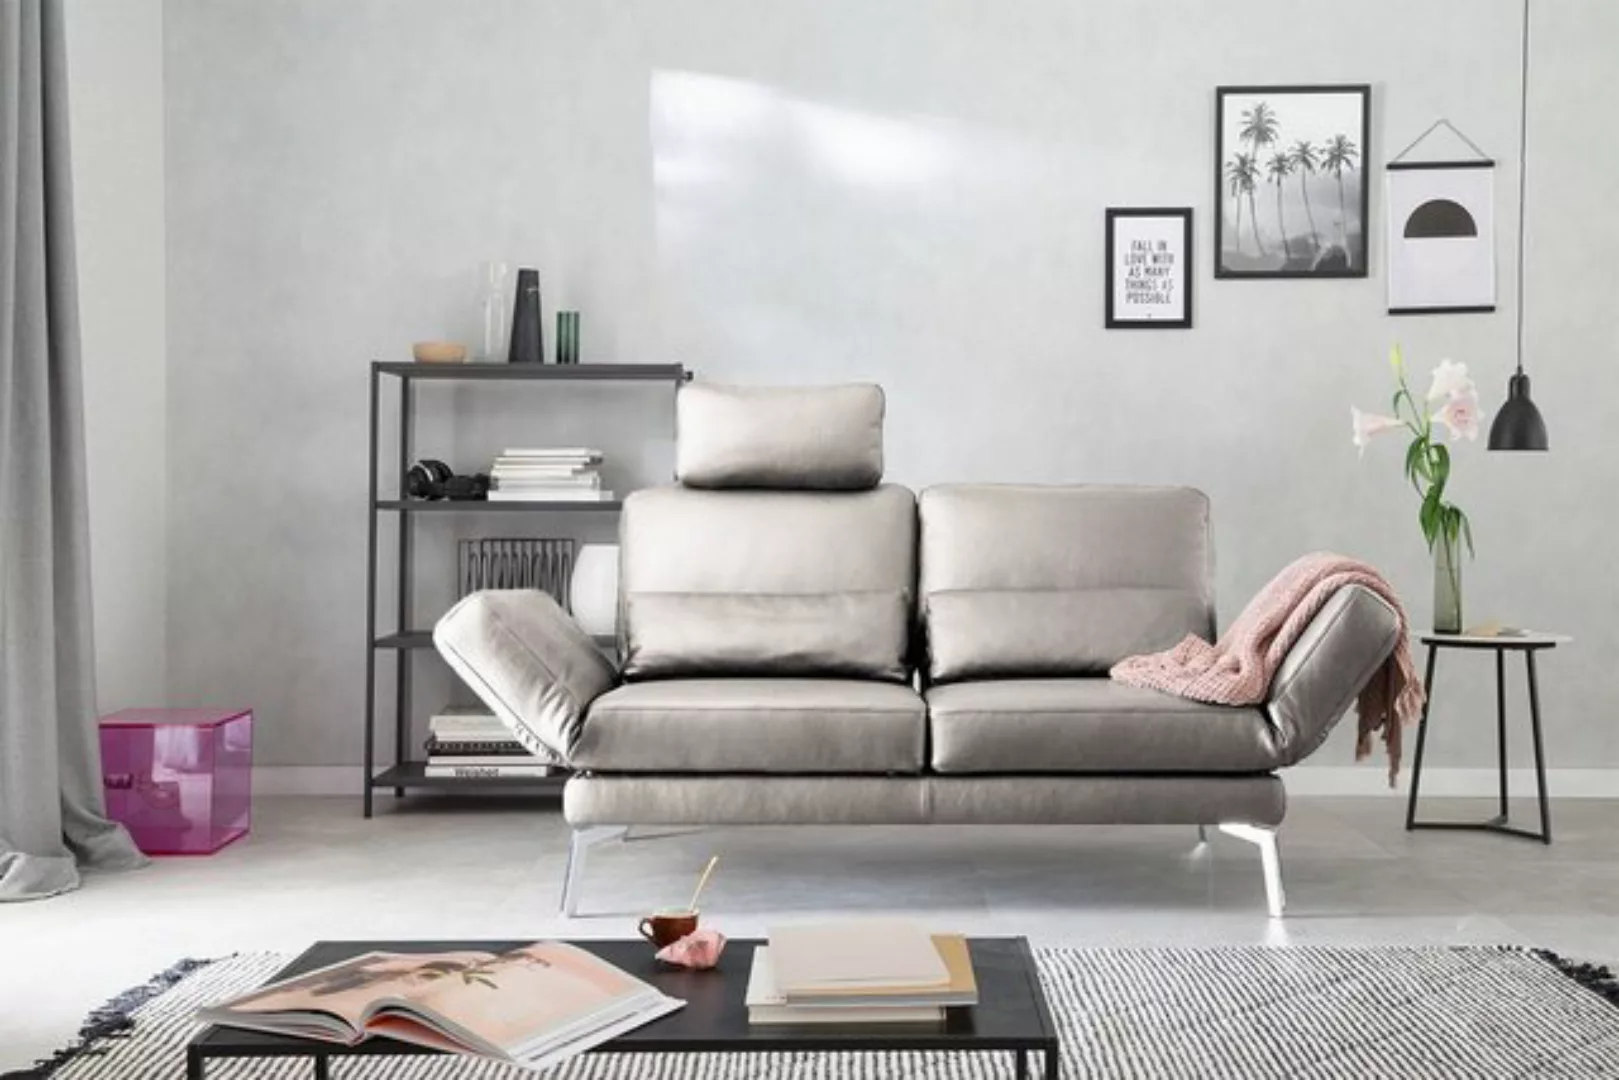 KAWOLA 2-Sitzer HURRICANE, Sofa Leder verschiedene Farben günstig online kaufen